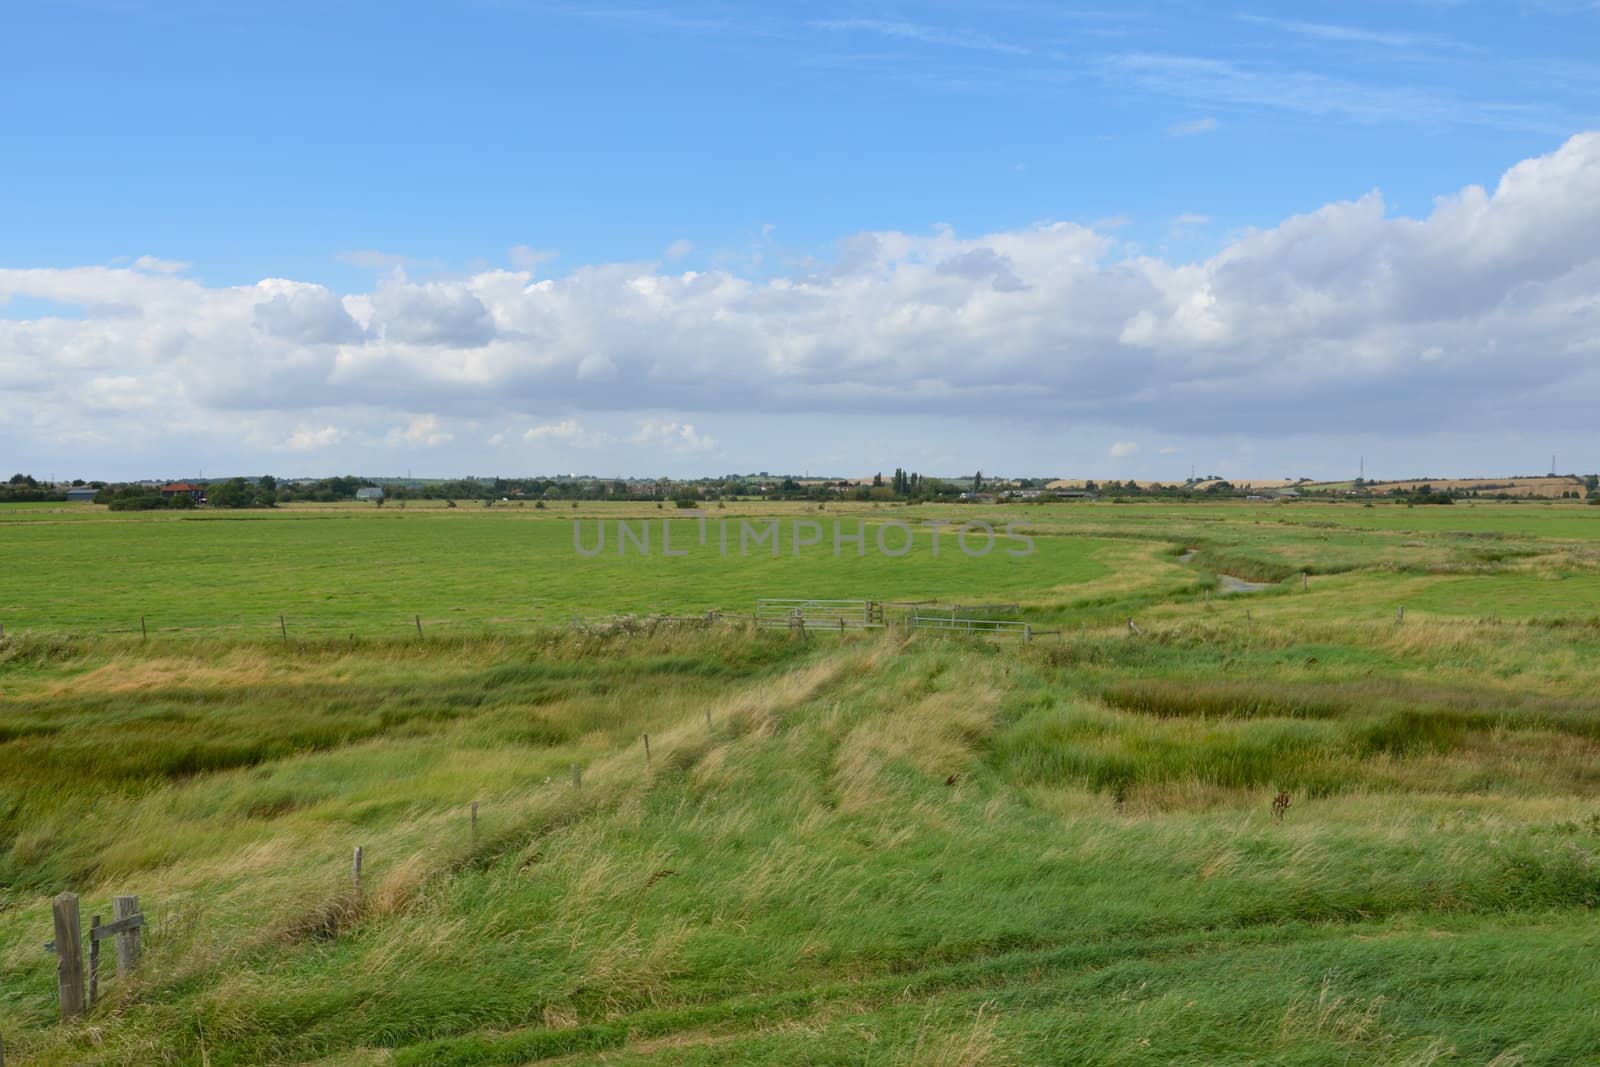 Essex farm landscape